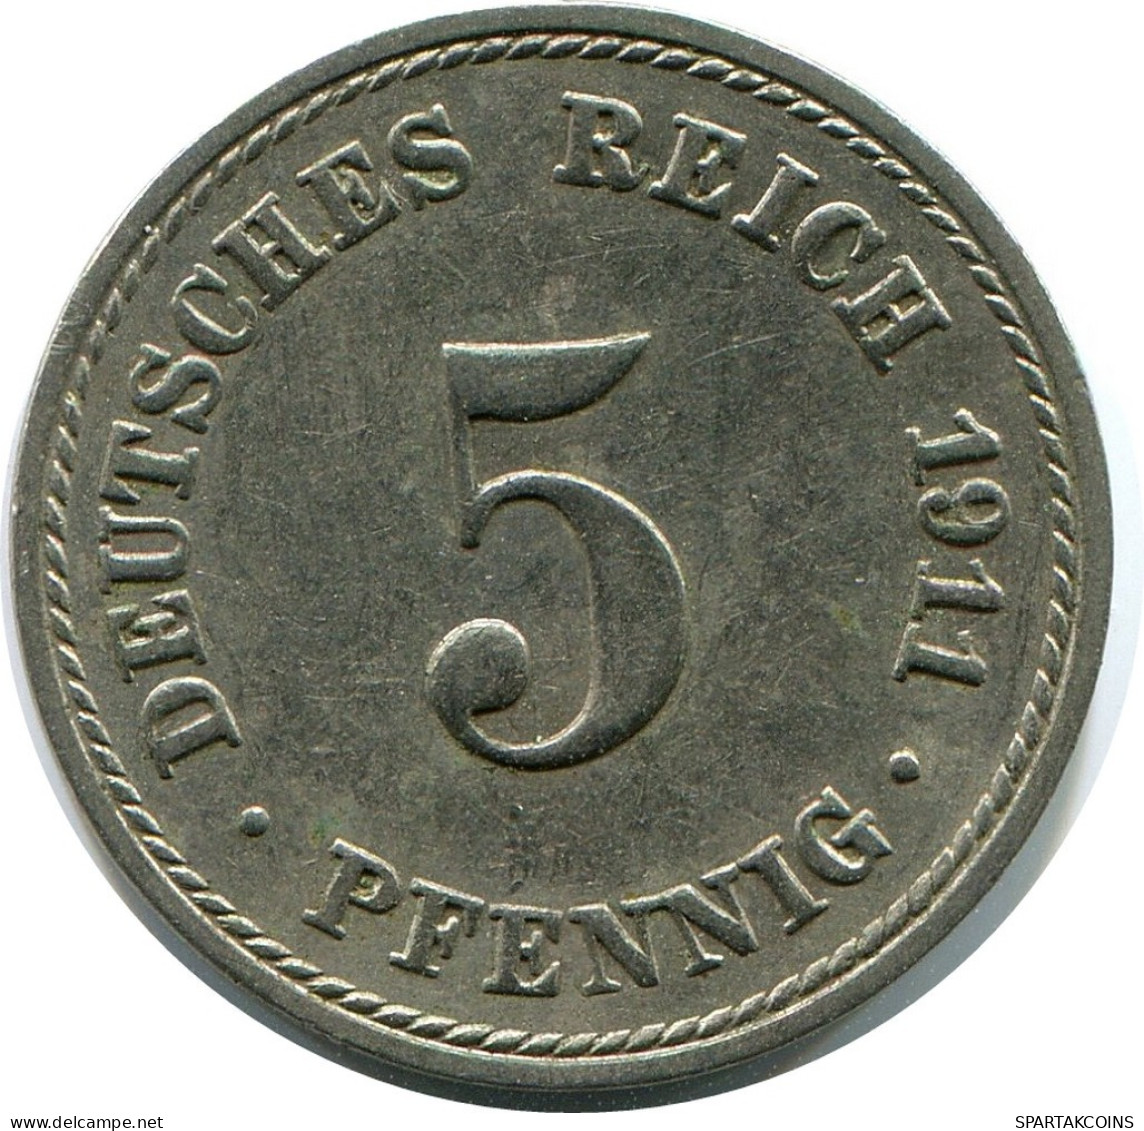 5 PFENNIG 1911 A GERMANY Coin #DB158.U.A - 5 Pfennig